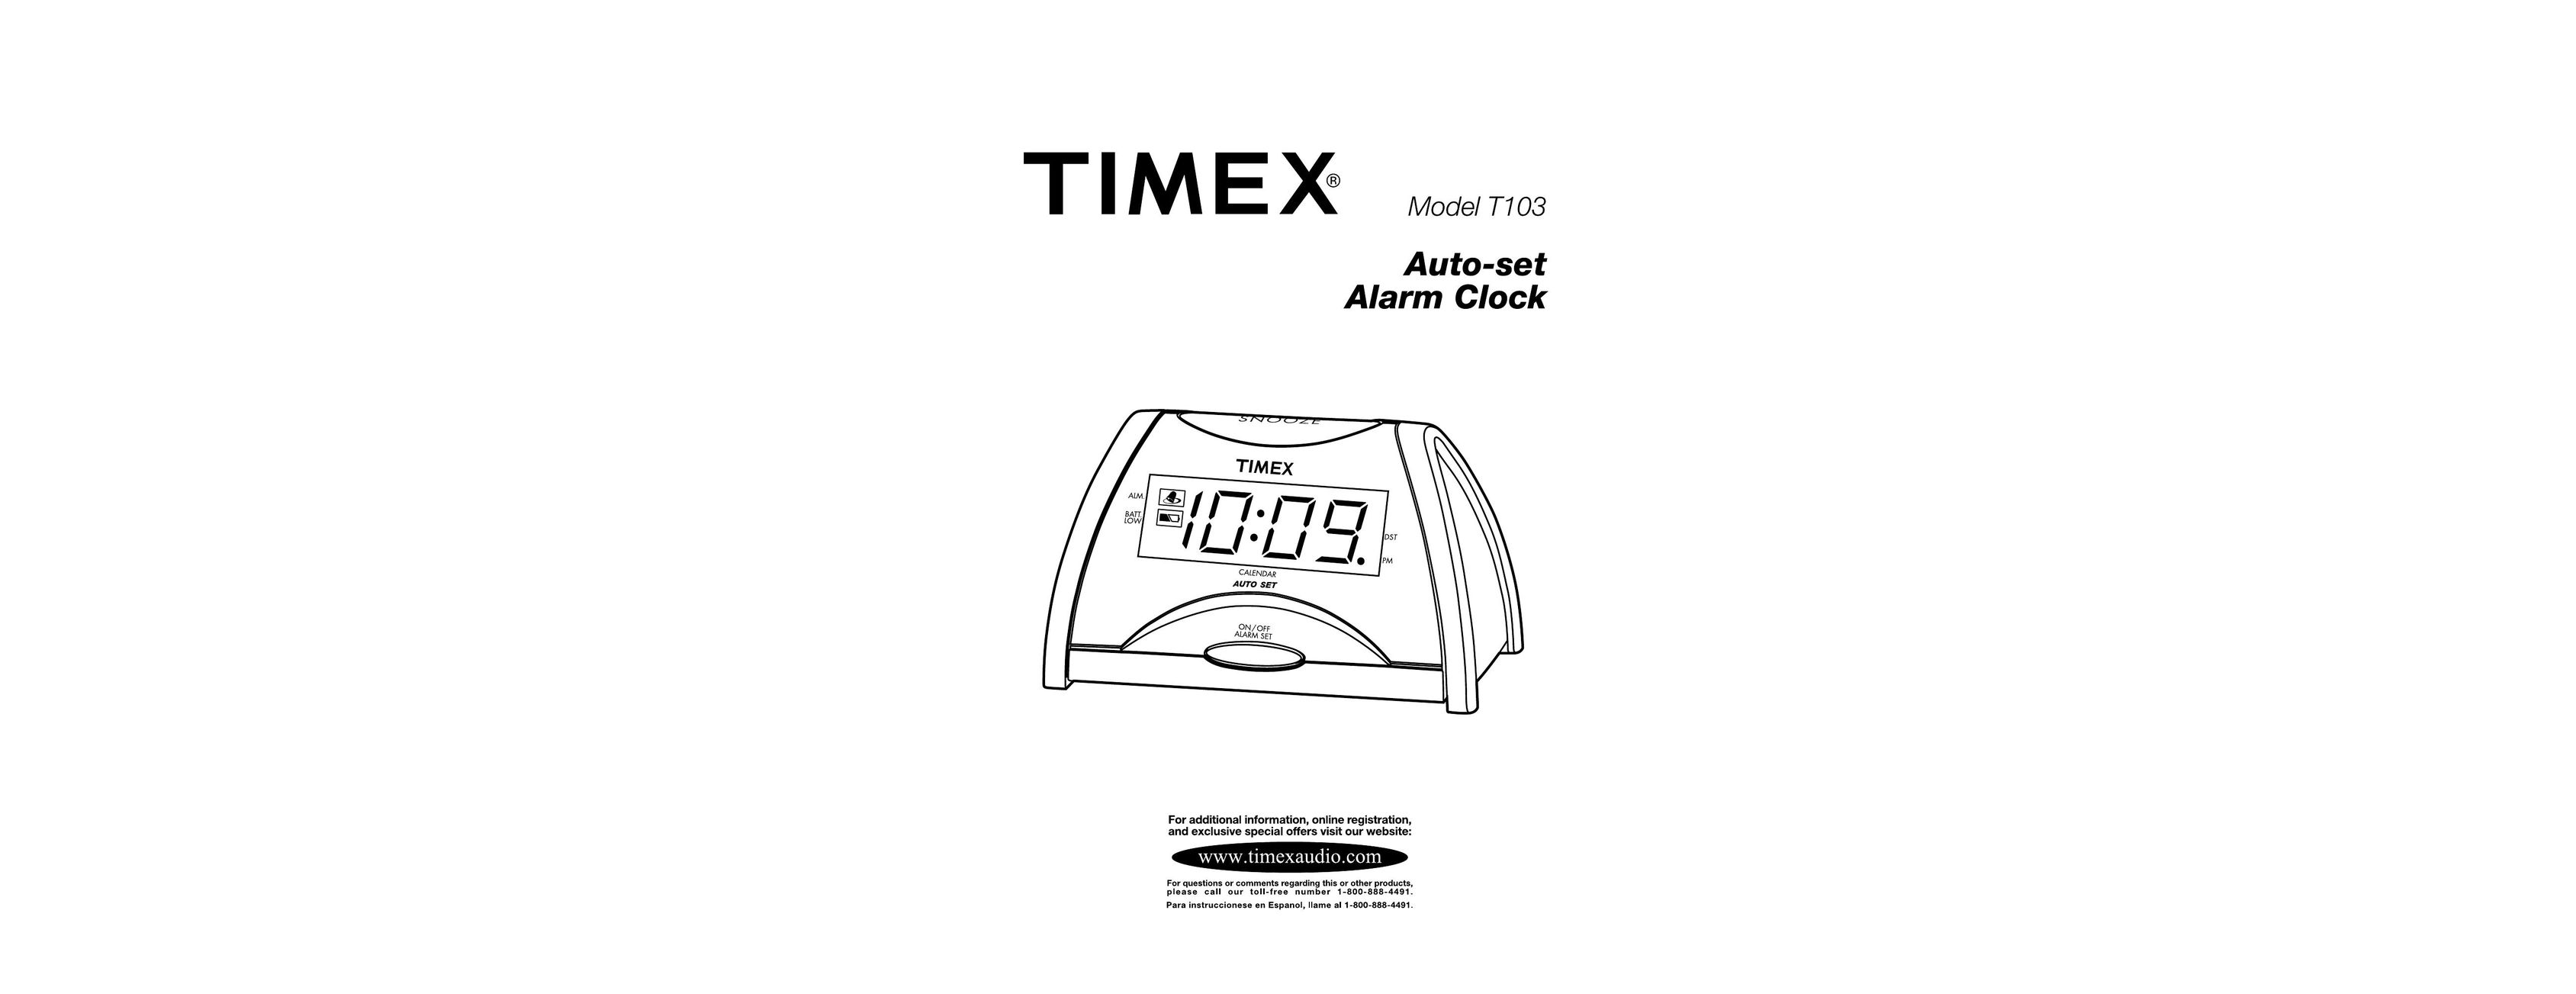 Timex T103 Clock User Manual